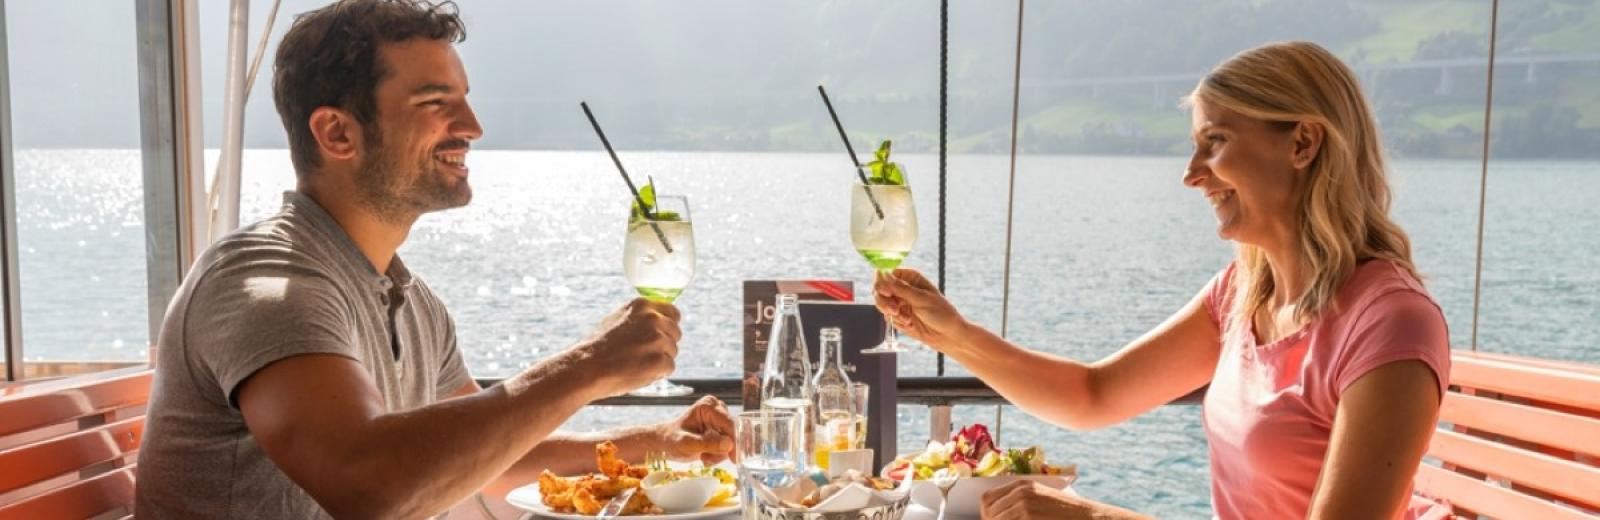 Una coppia assapora un pasto a bordo di un battello a vapore, Lago dei Quattro Cantoni, Svizzera centrale © Swiss Travel System SA, 2019, fotografo: Daniel Ammann